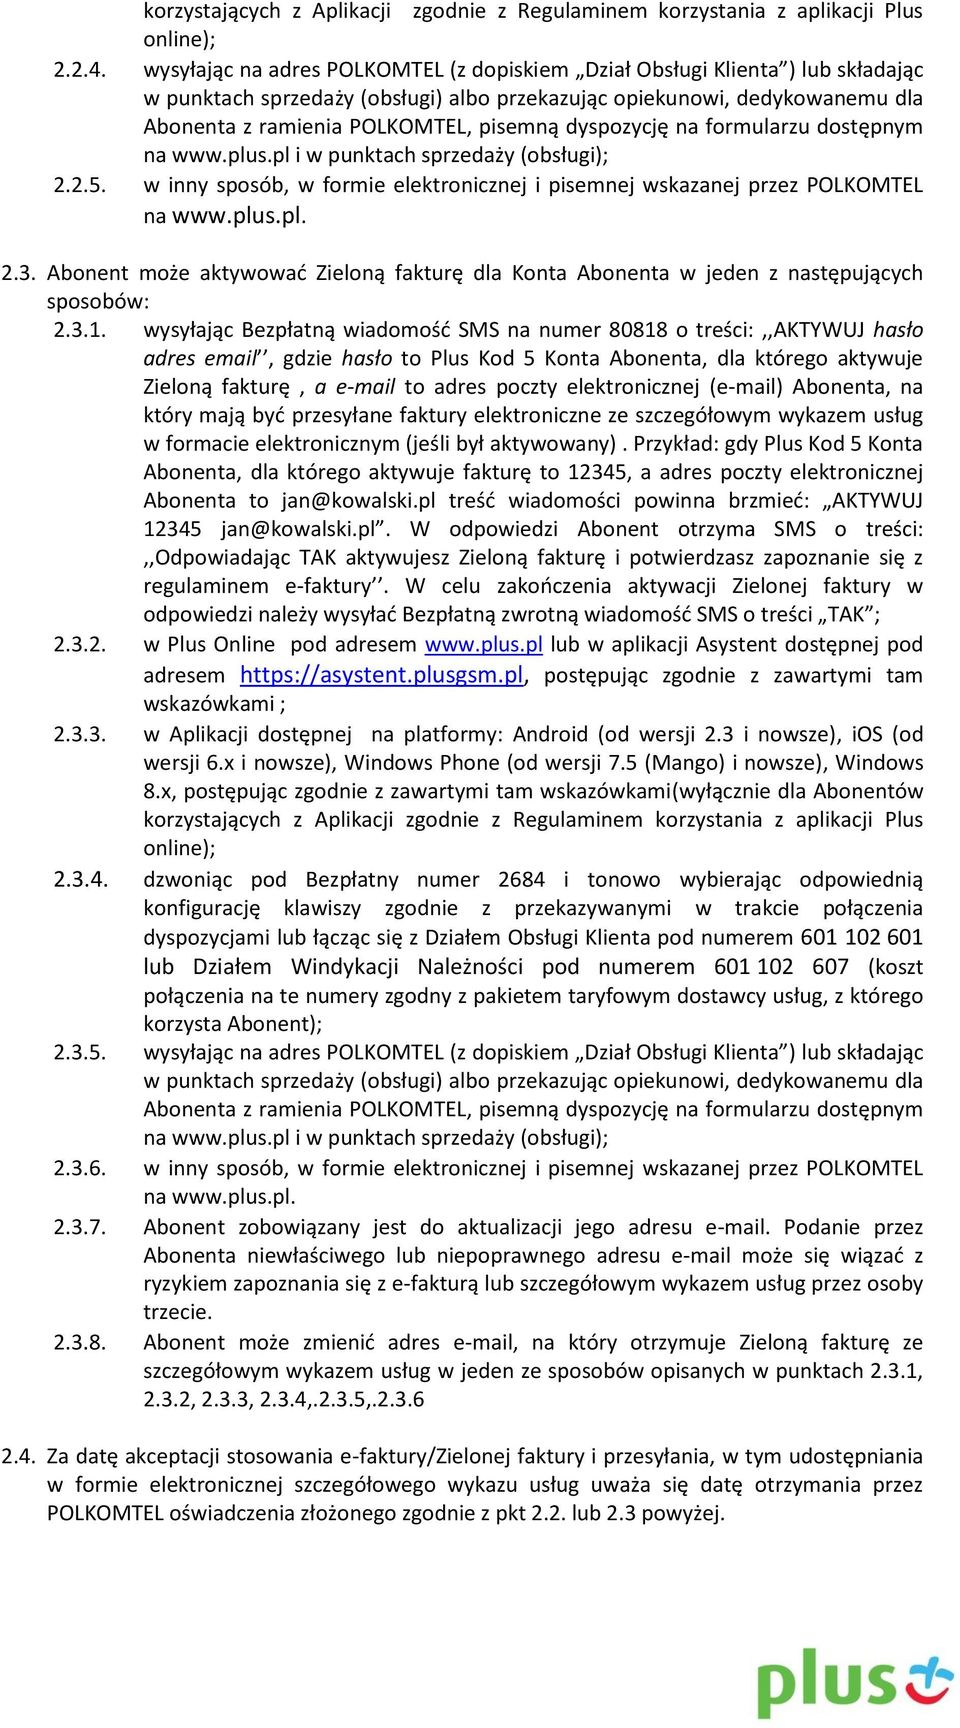 dyspozycję na formularzu dostępnym na www.plus.pl i w punktach sprzedaży (obsługi); 2.2.5. w inny sposób, w formie elektronicznej i pisemnej wskazanej przez POLKOMTEL na www.plus.pl. 2.3.